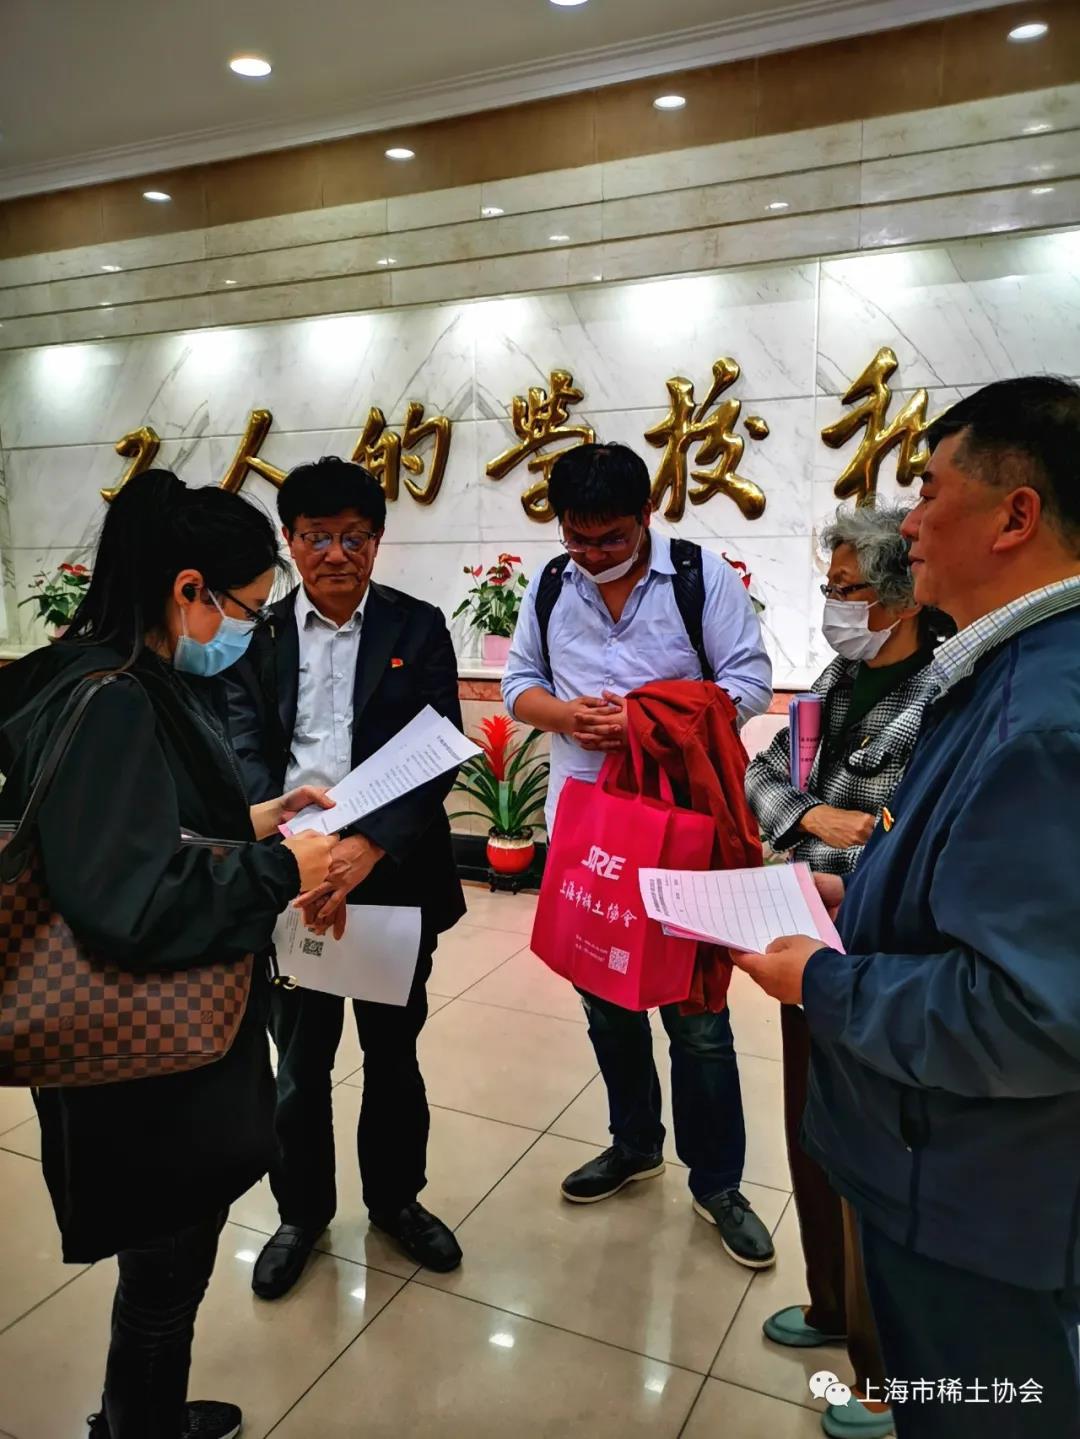 上海稀土聚氨酯硅酸盐协会联合党支部召开一届九次全体党员大会